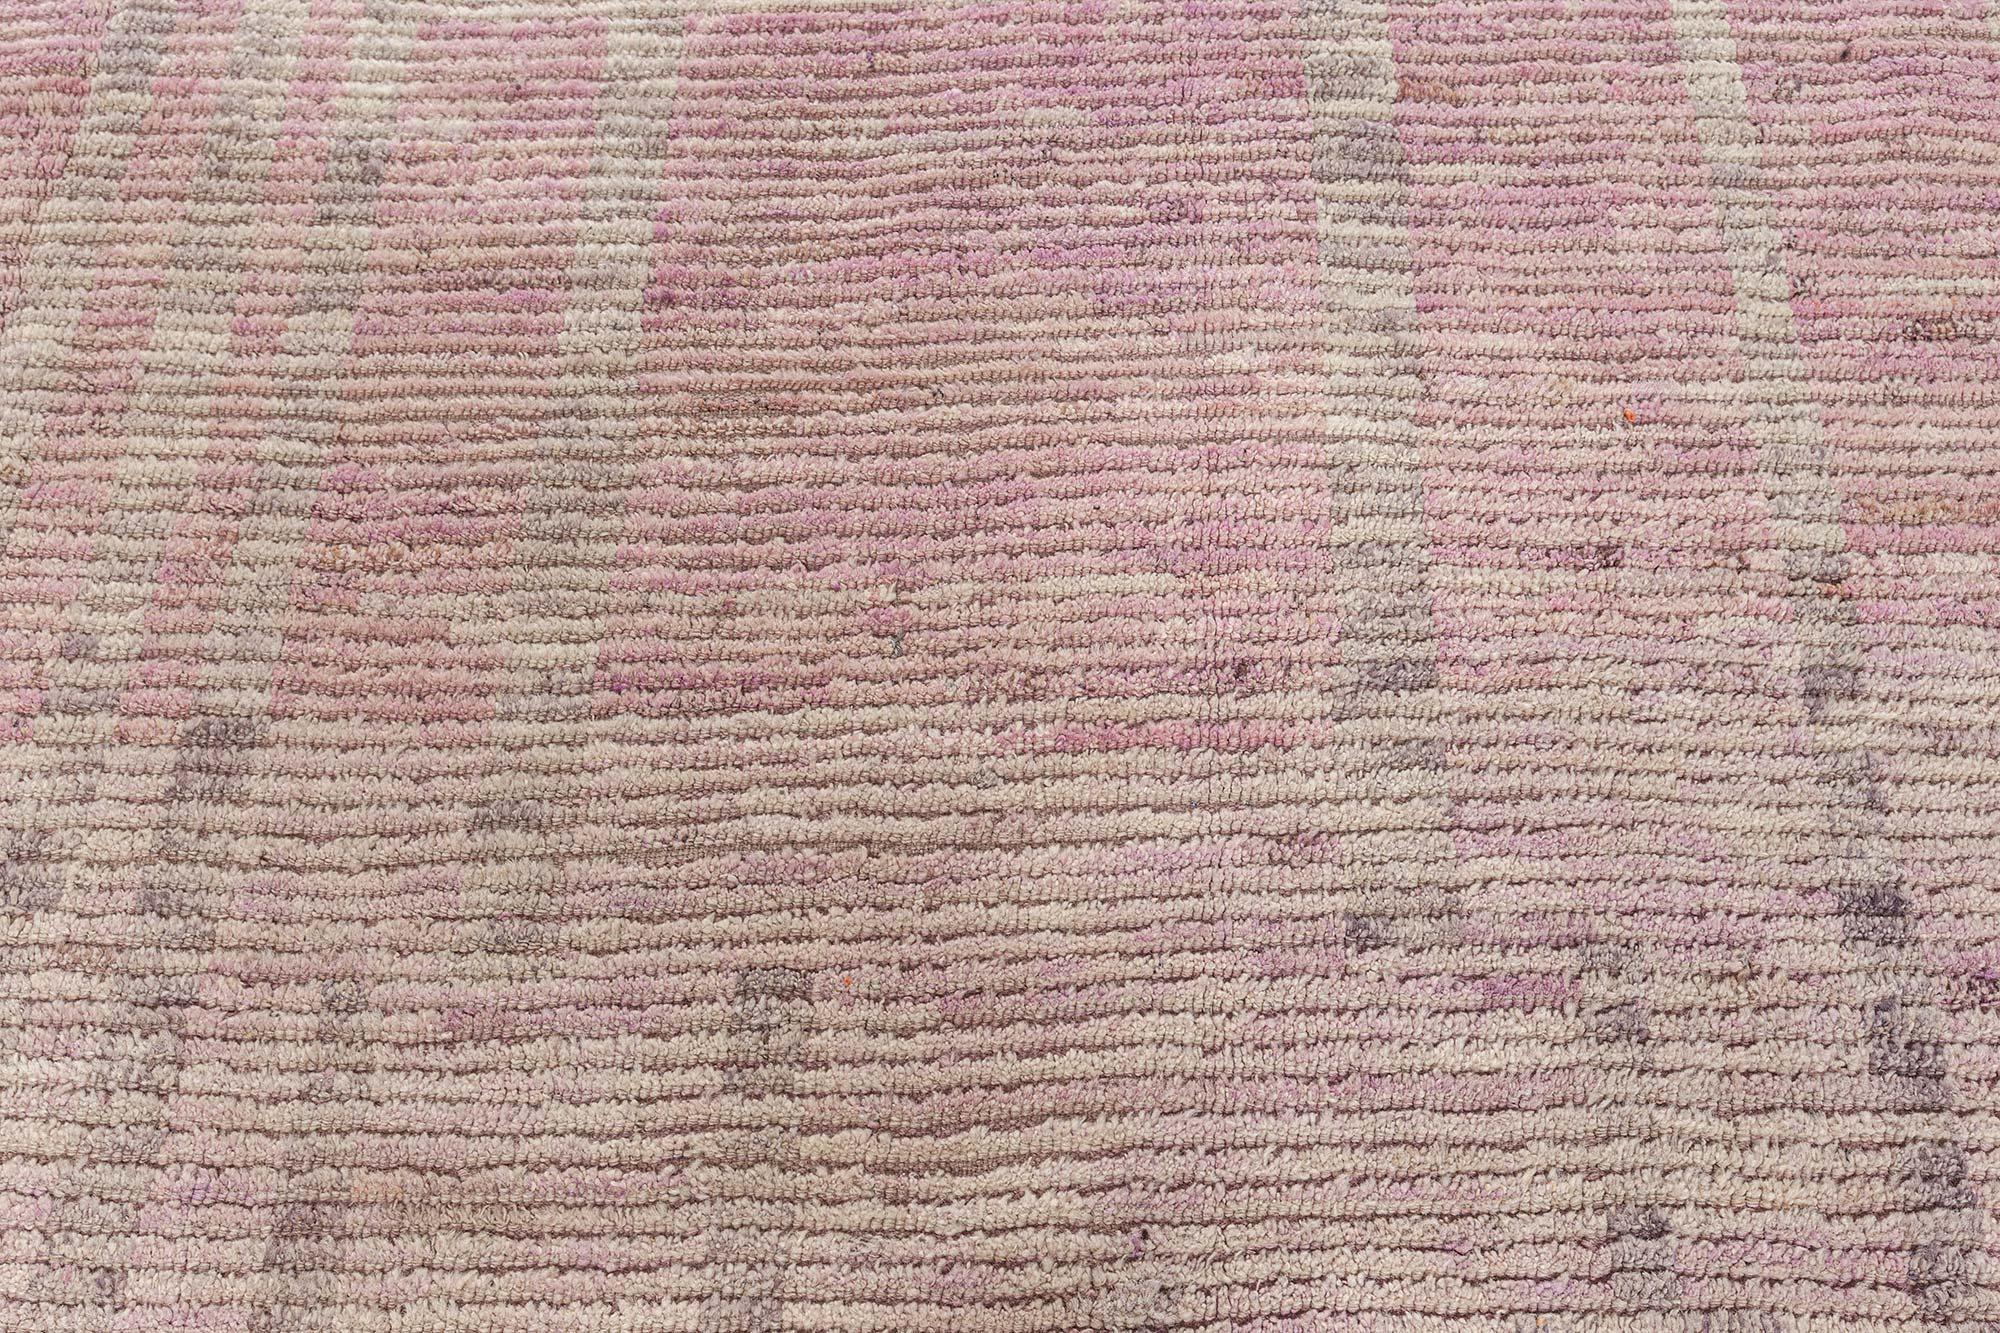 Marokkanischer Teppich im Tribal-Stil in rosa Tönen von Doris Leslie Blau
Größe: 13'10